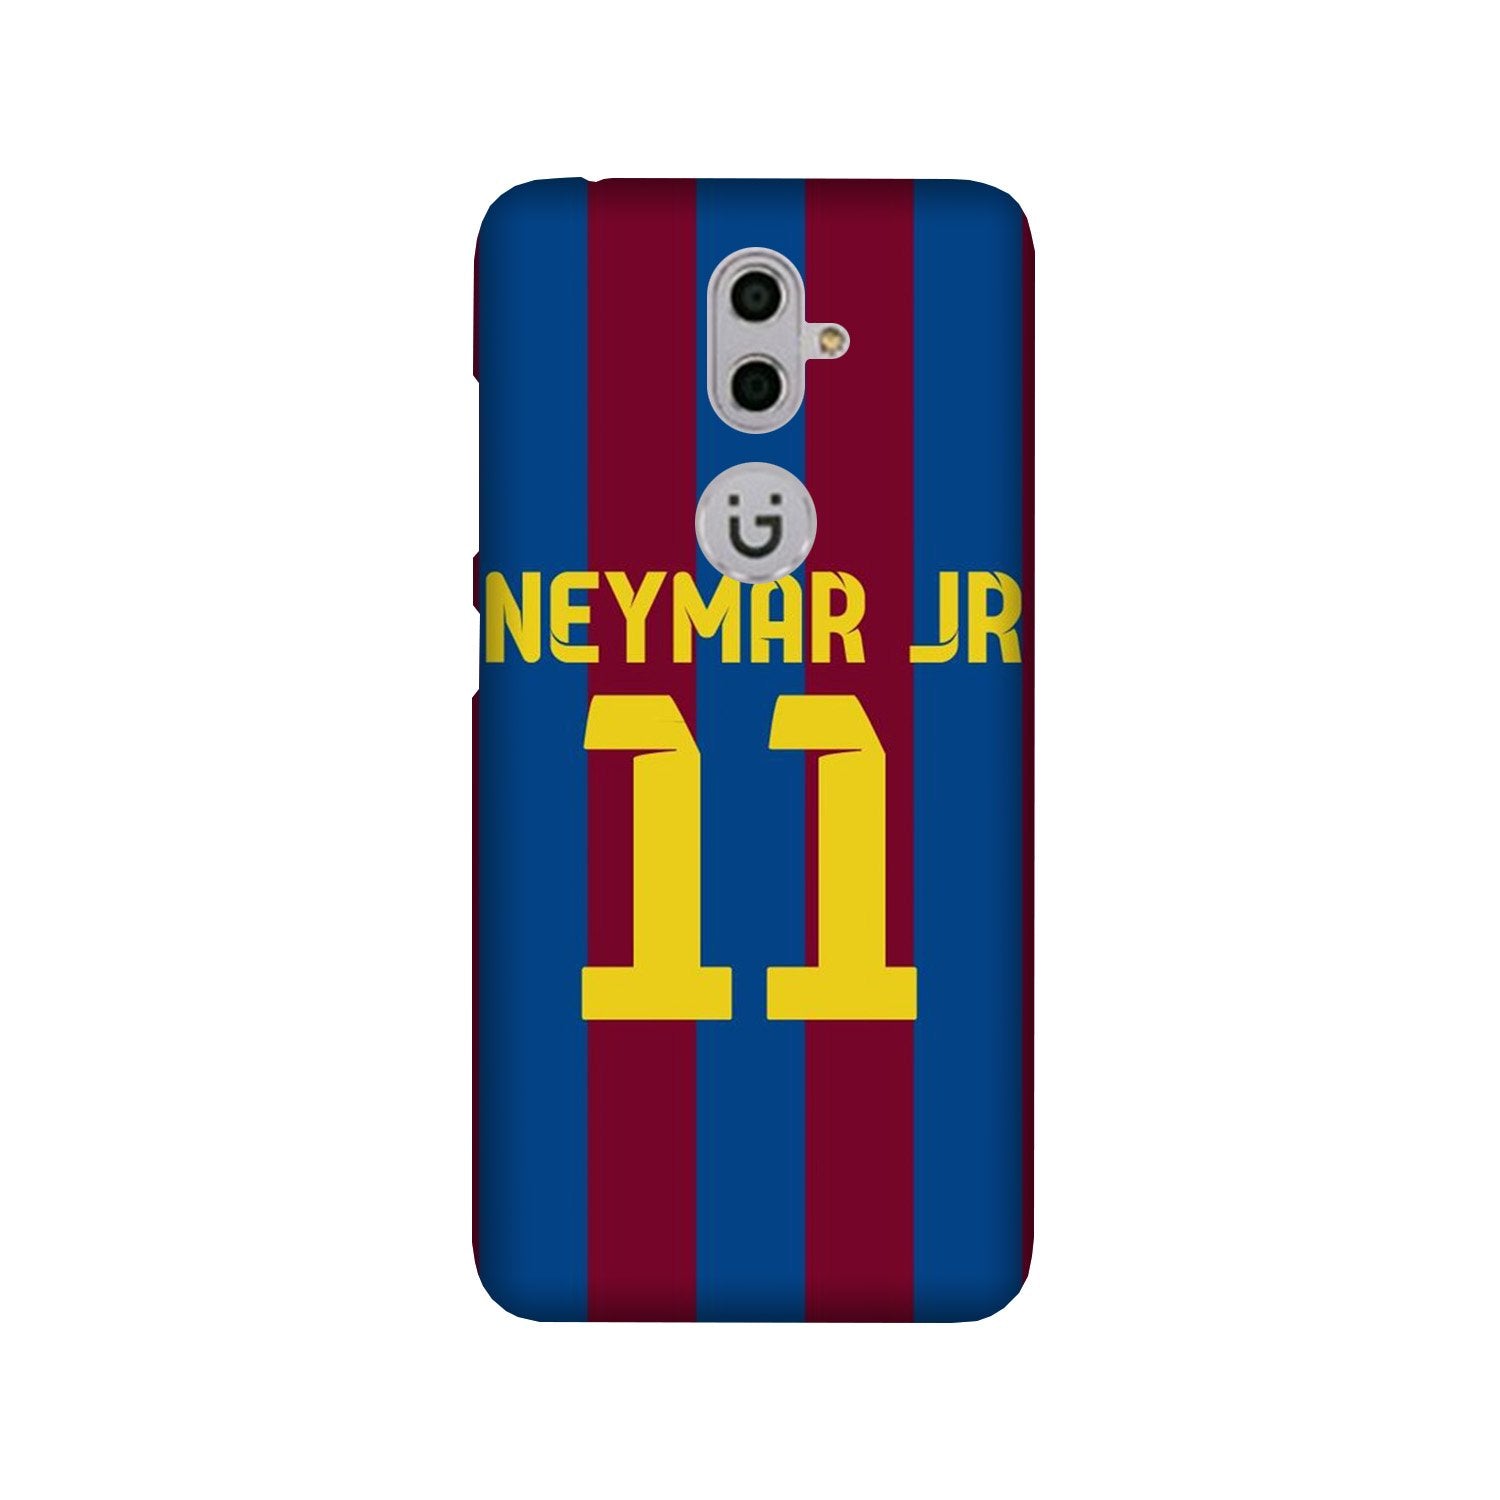 Neymar Jr Case for Gionee S9(Design - 162)